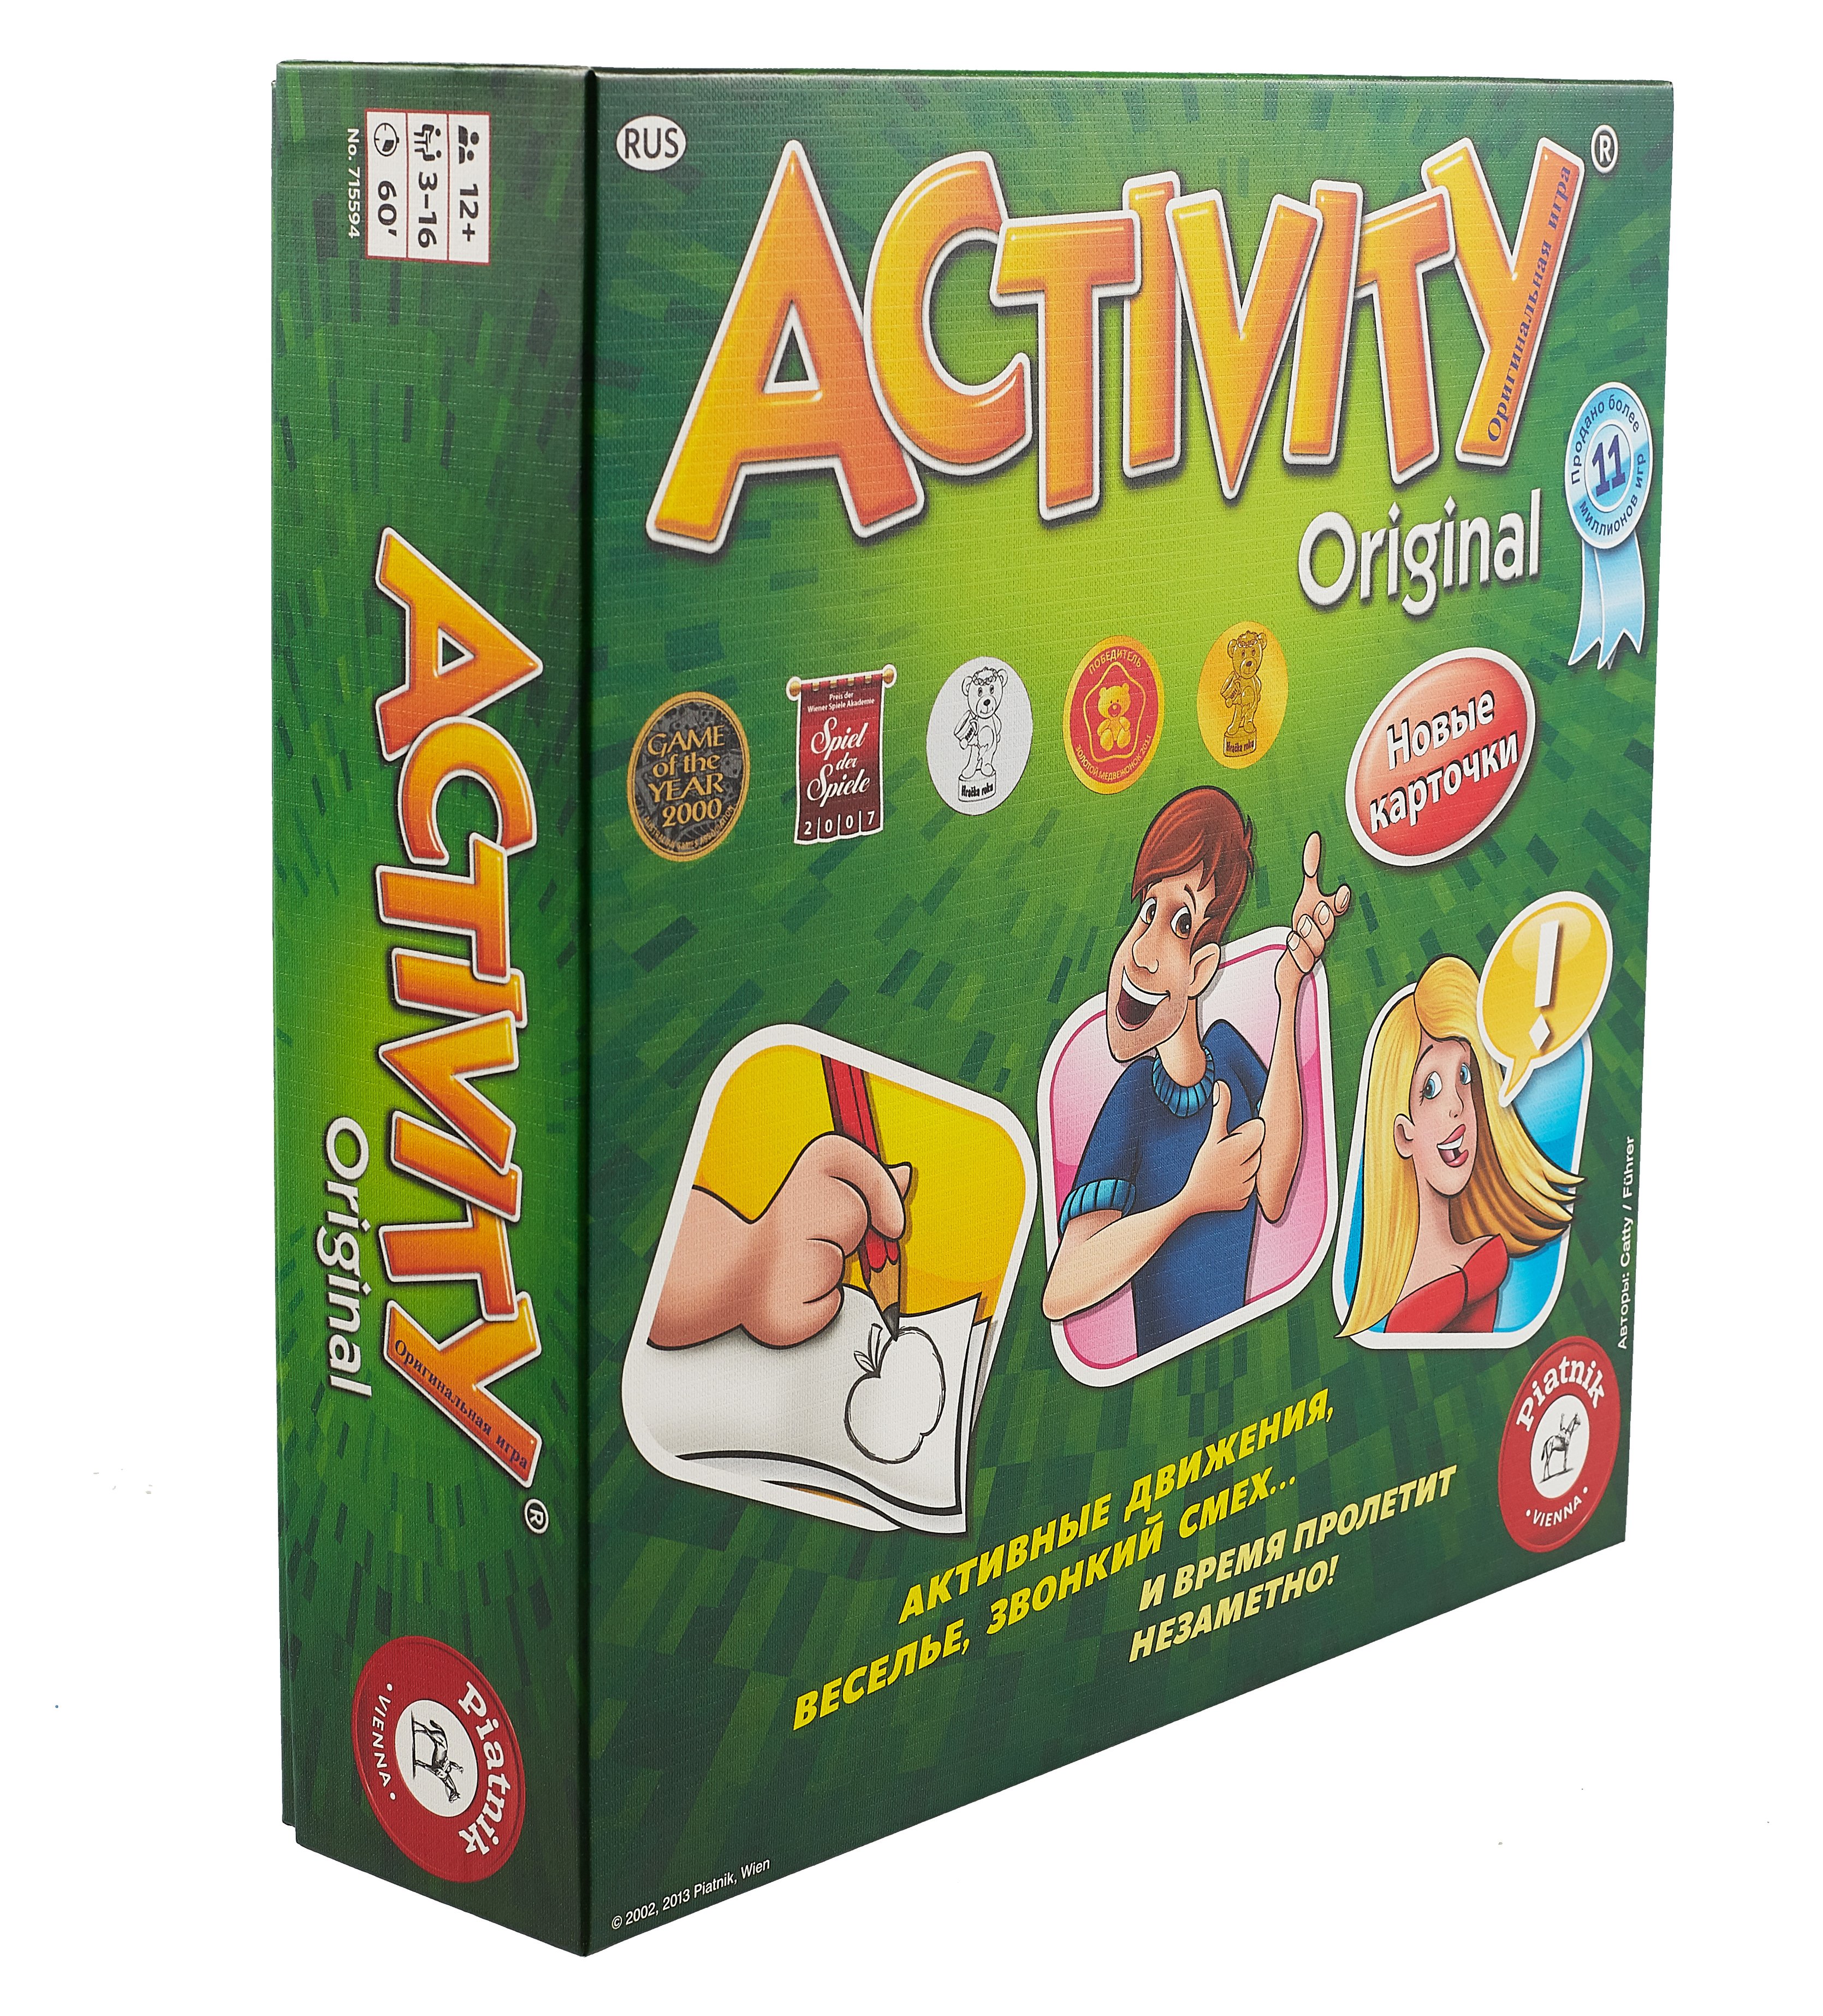    Activity 3